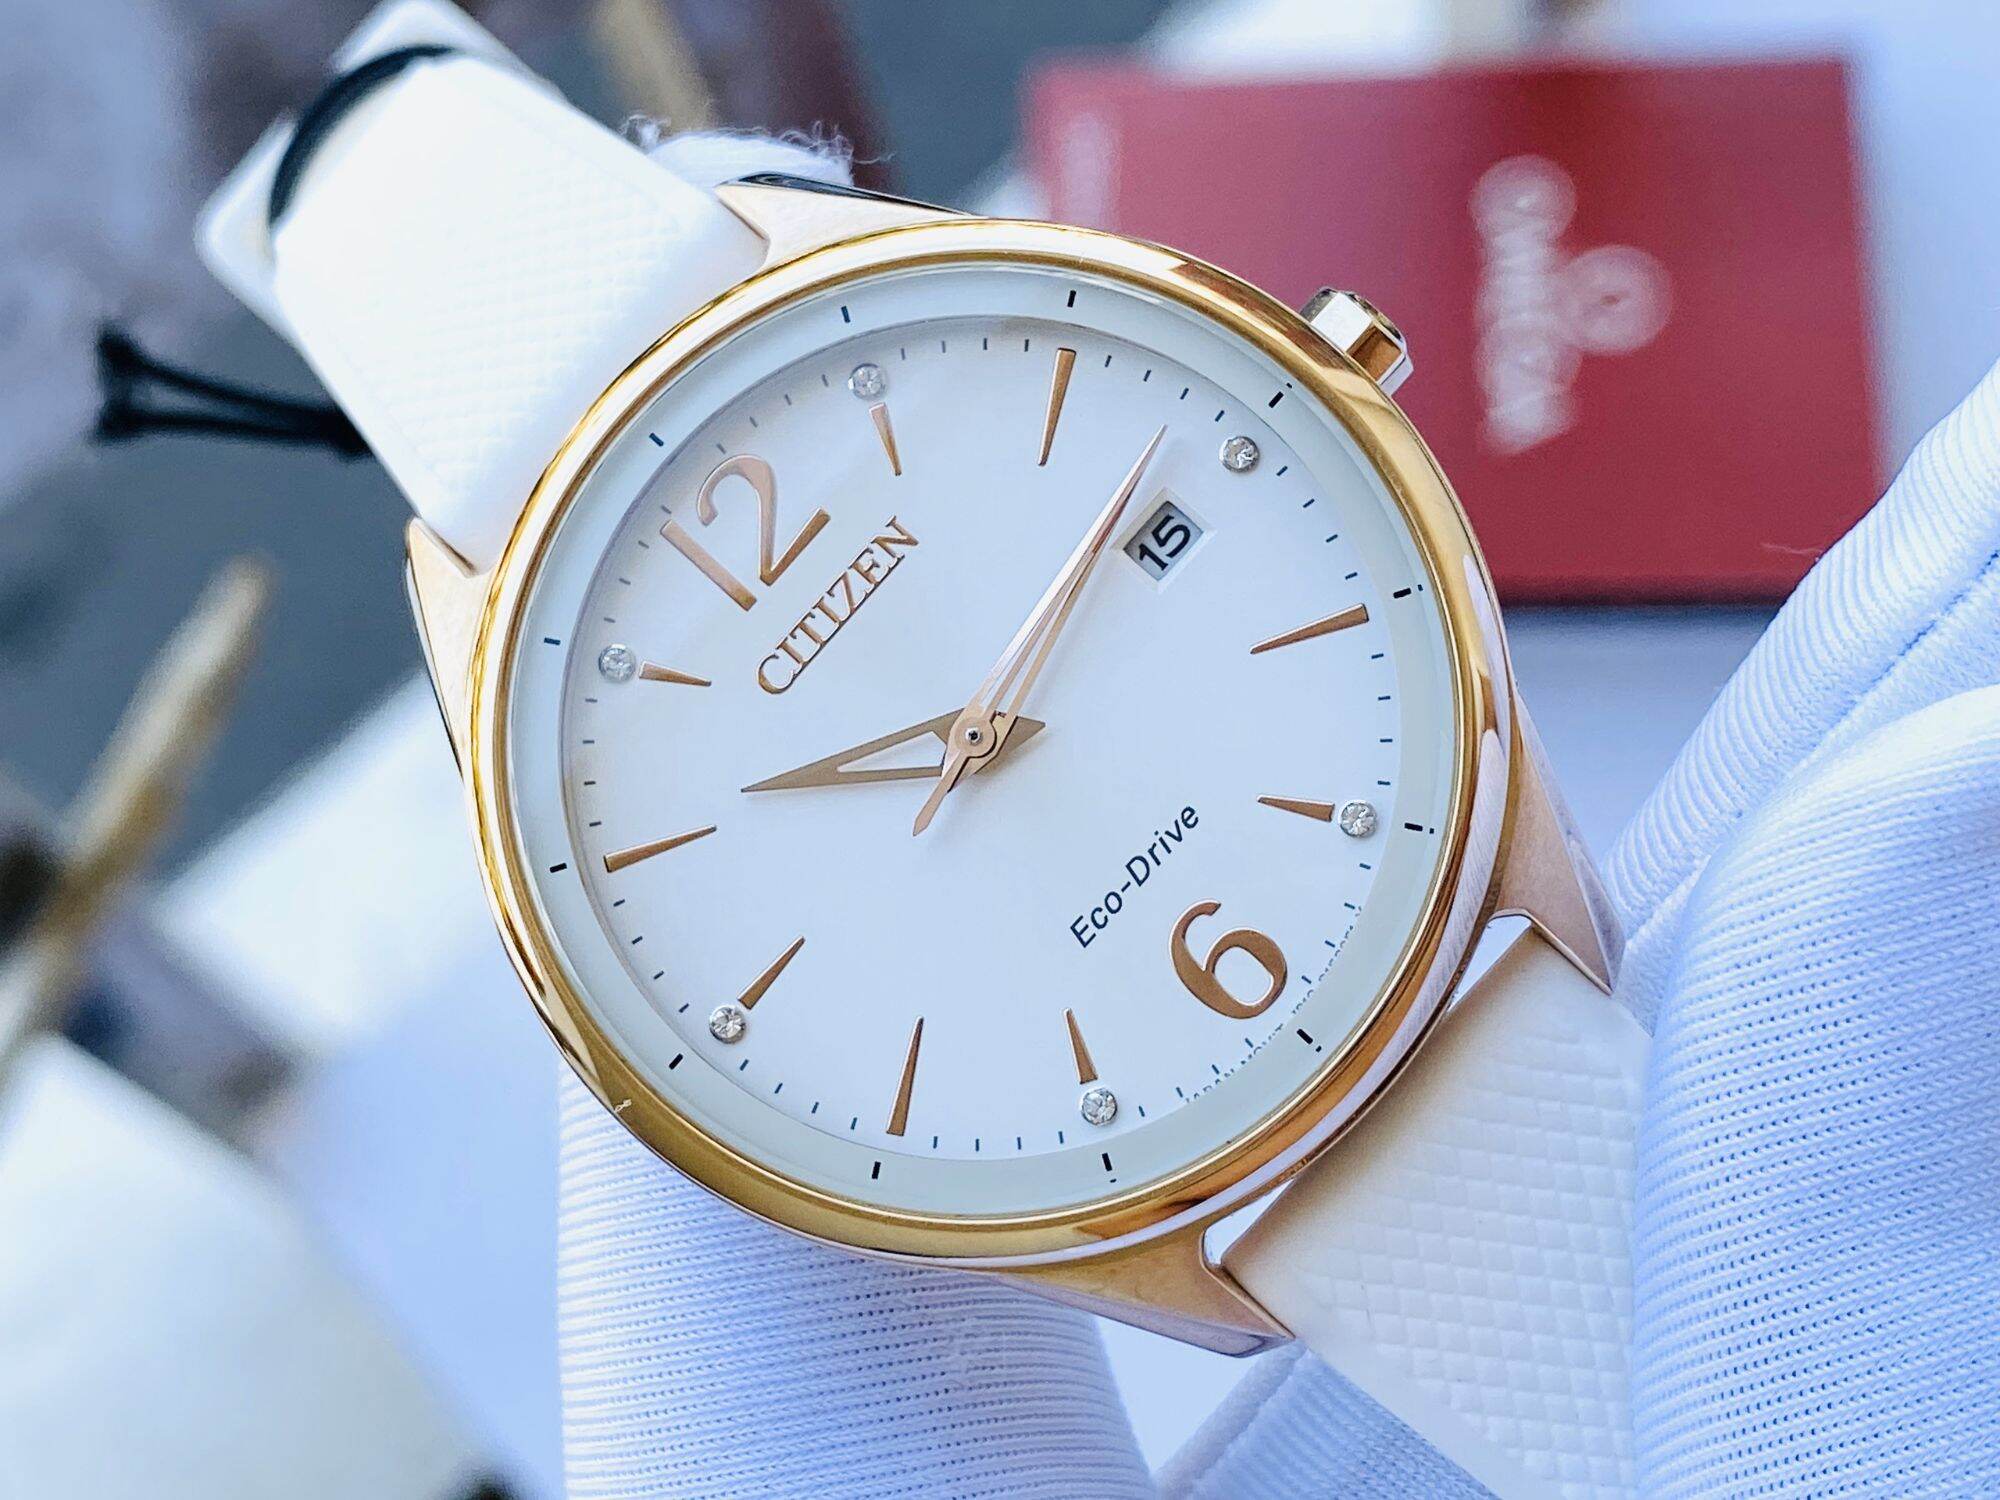 Đồng hồ thời trang nữ chính hãng citizen FE6103-00A niềng vàng kết hợp với tone màu trắng chủ đạo. mặt đính 6 hạt pha lê lấp lánh